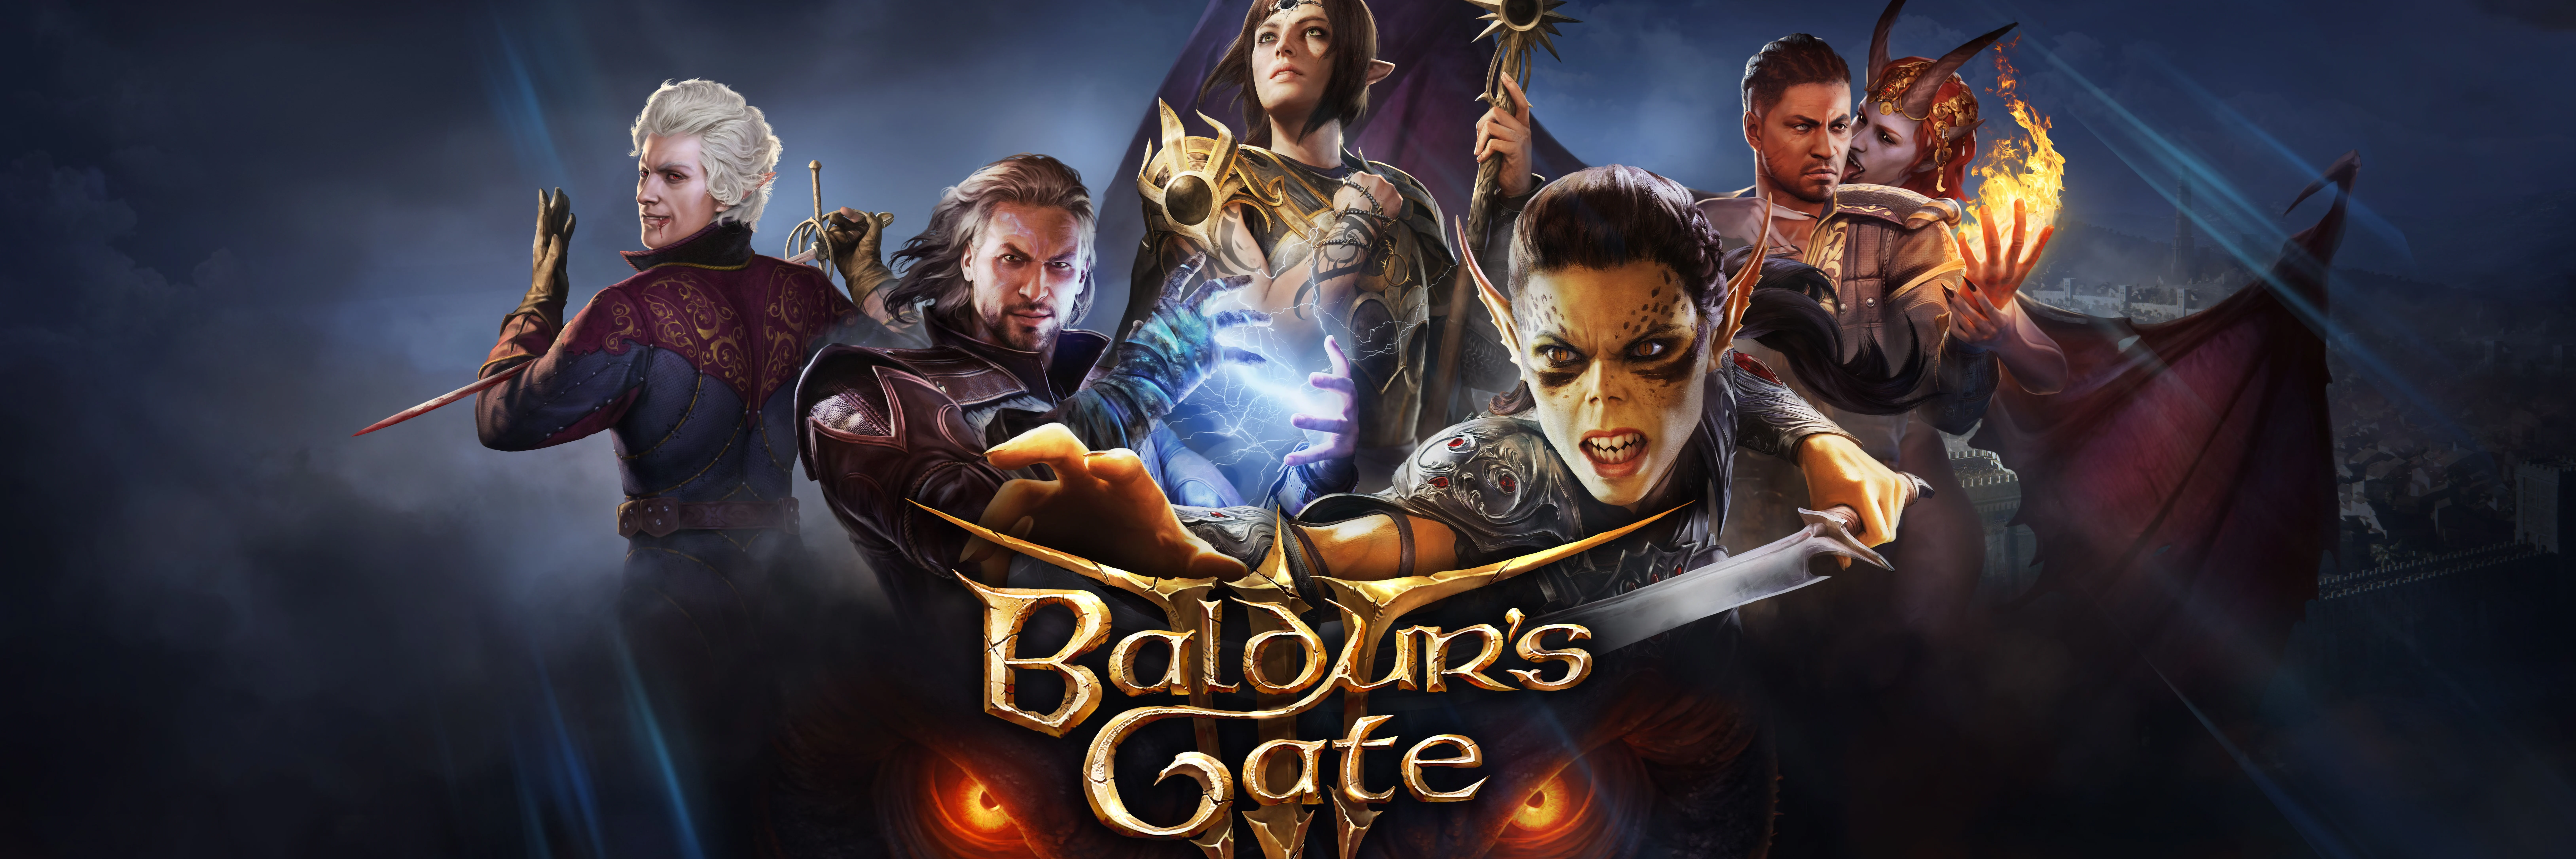 Подборка информации из последнего «обращения к игровому сообществу» Baldur's Gate 3.